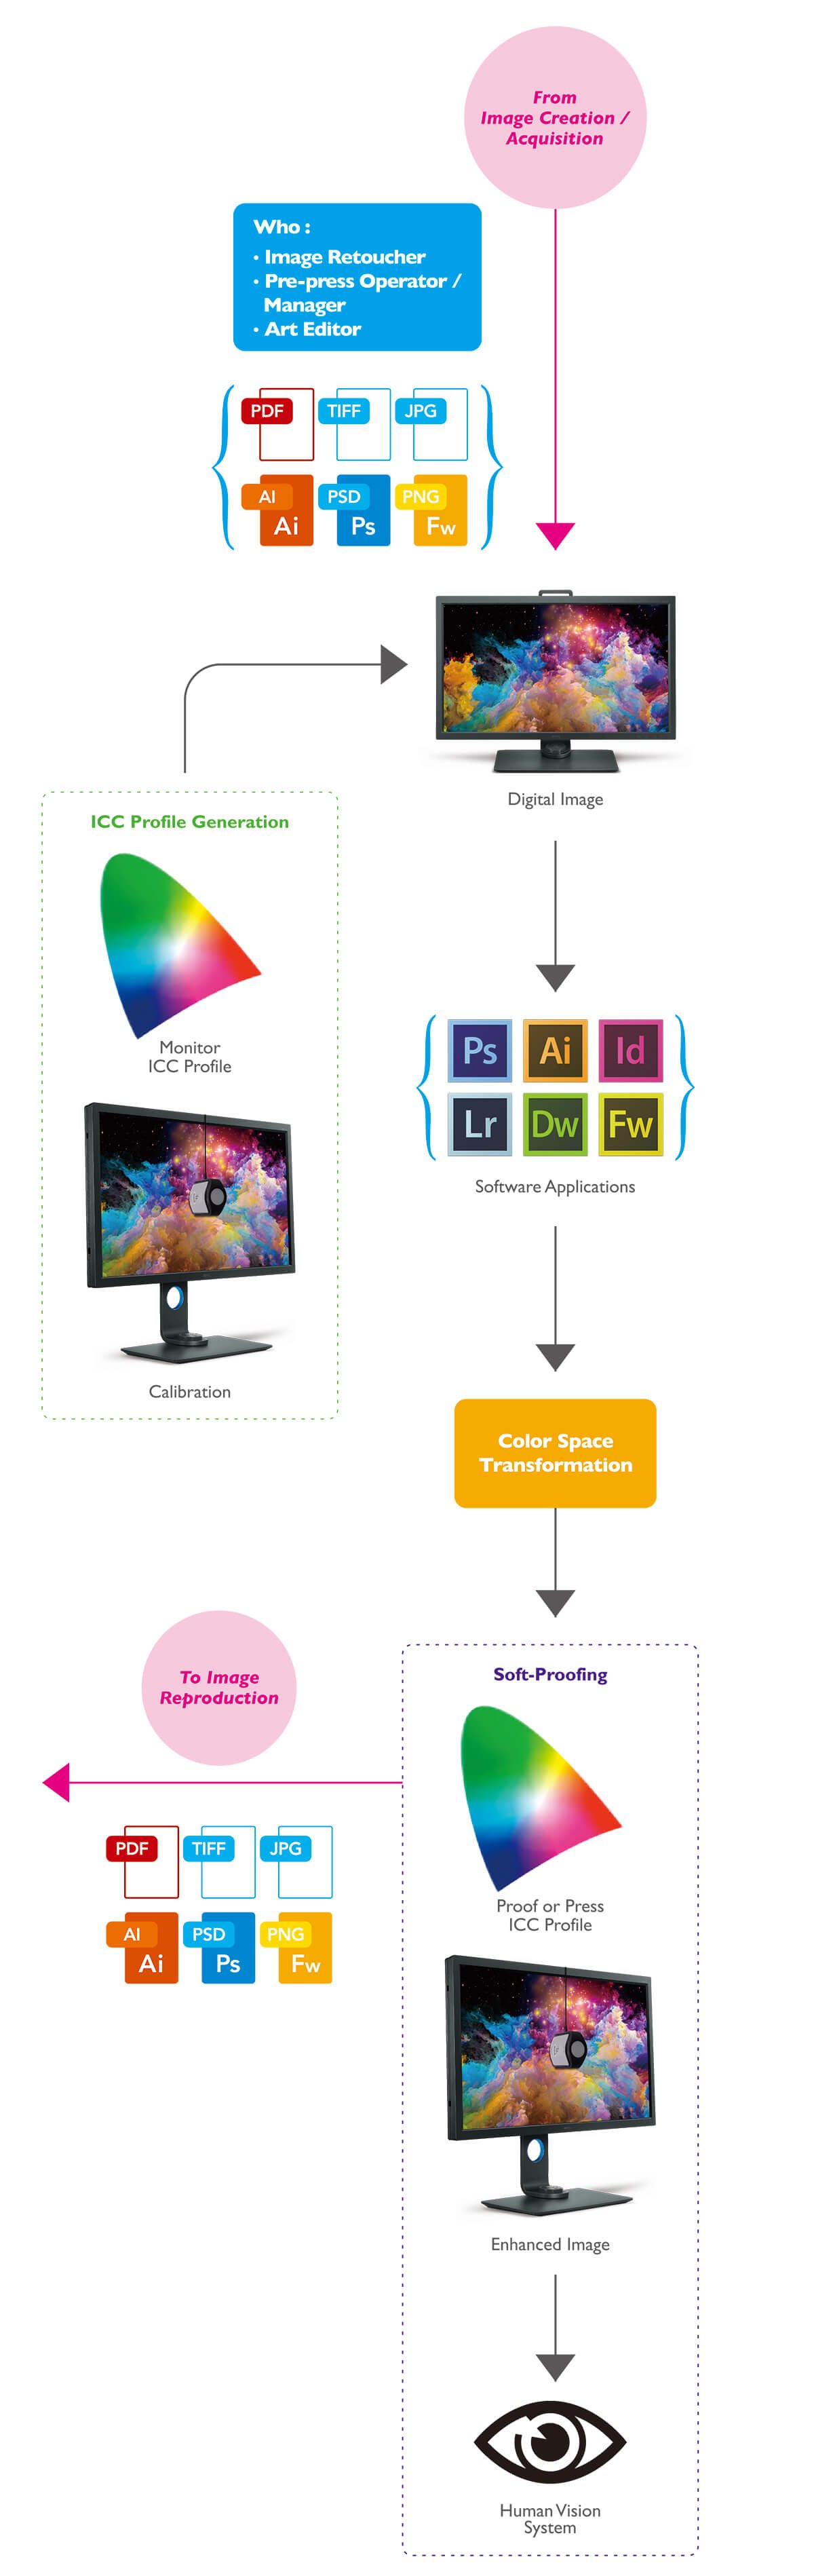 Quy trình quản lý màu sắc điển hình để tăng cường hình ảnh.